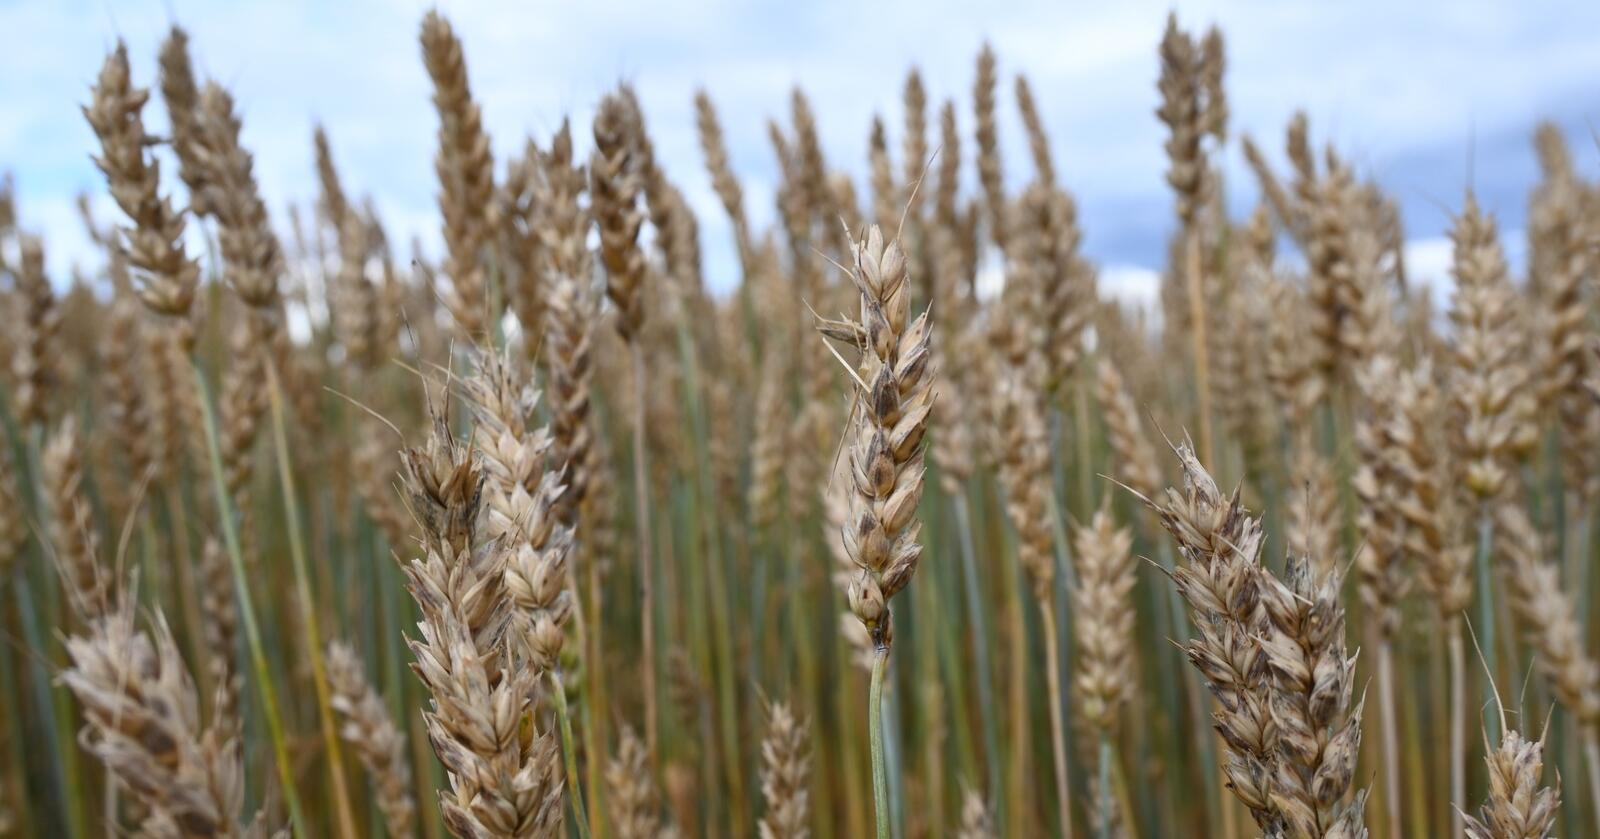 Asparagin: Hveten er konstruert for å ha mindre asparagin, en naturlig aminosyre som blir til akrylamid når brødet blir bakt eller rista. (Foto: Norsk Landbruk)